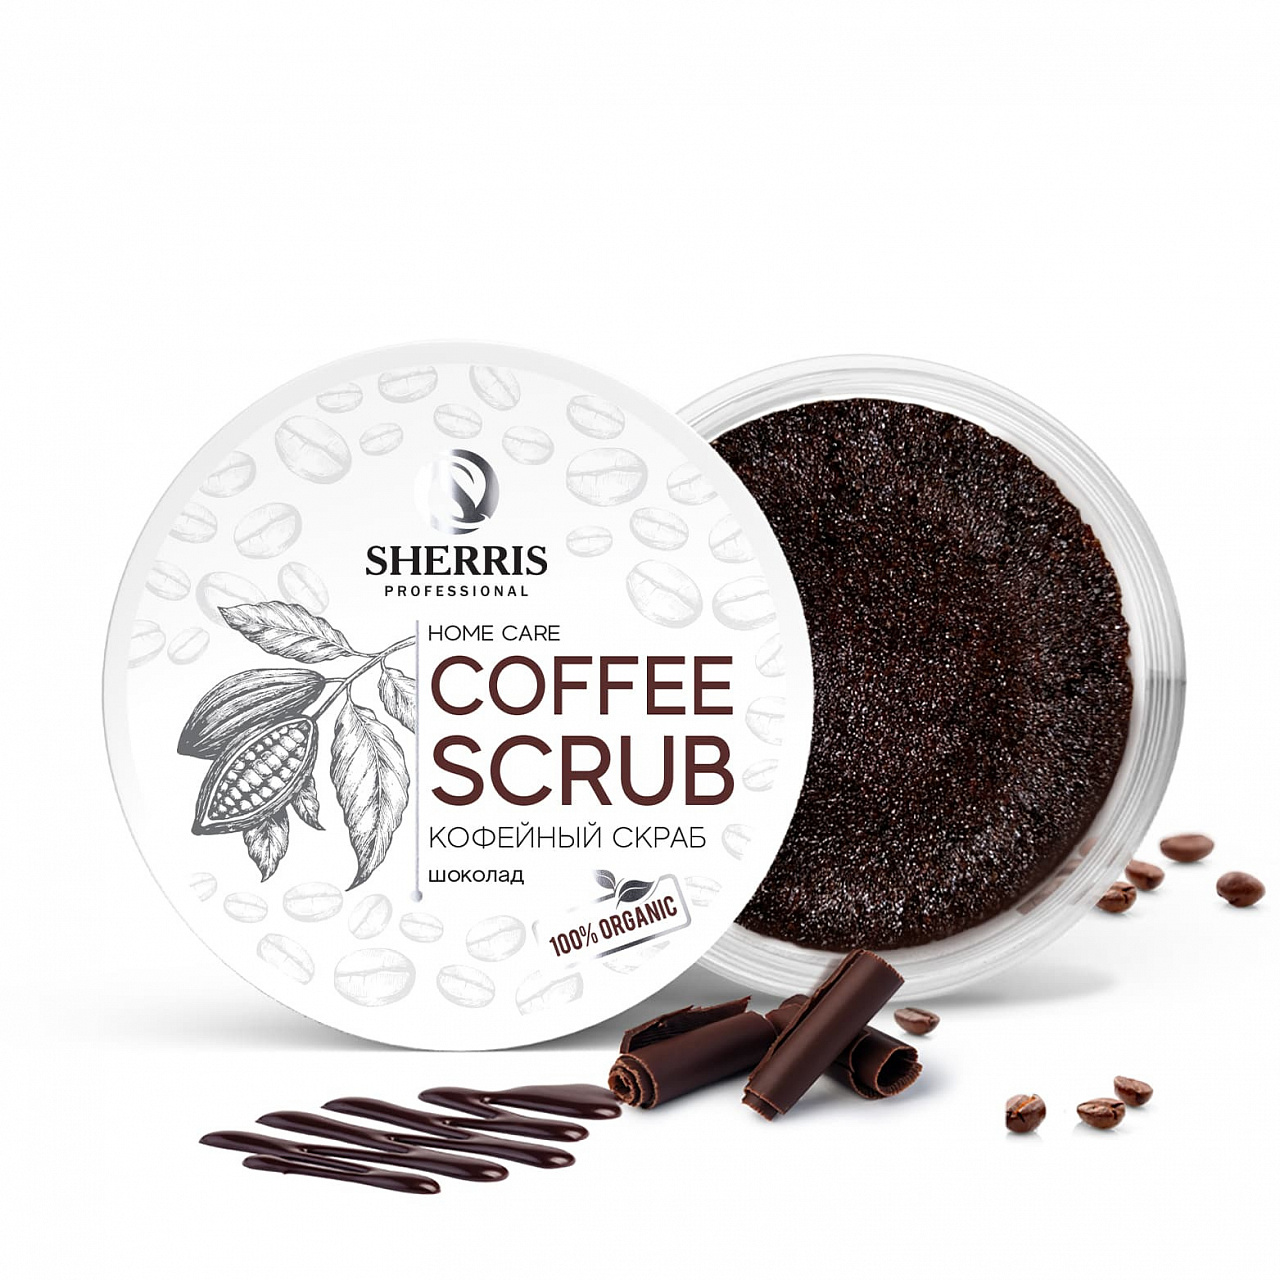 Кофейный скраб для тела SHERRIS шоколад, 200 гр солюшка скраб для тела кофе и шоколад 250 0